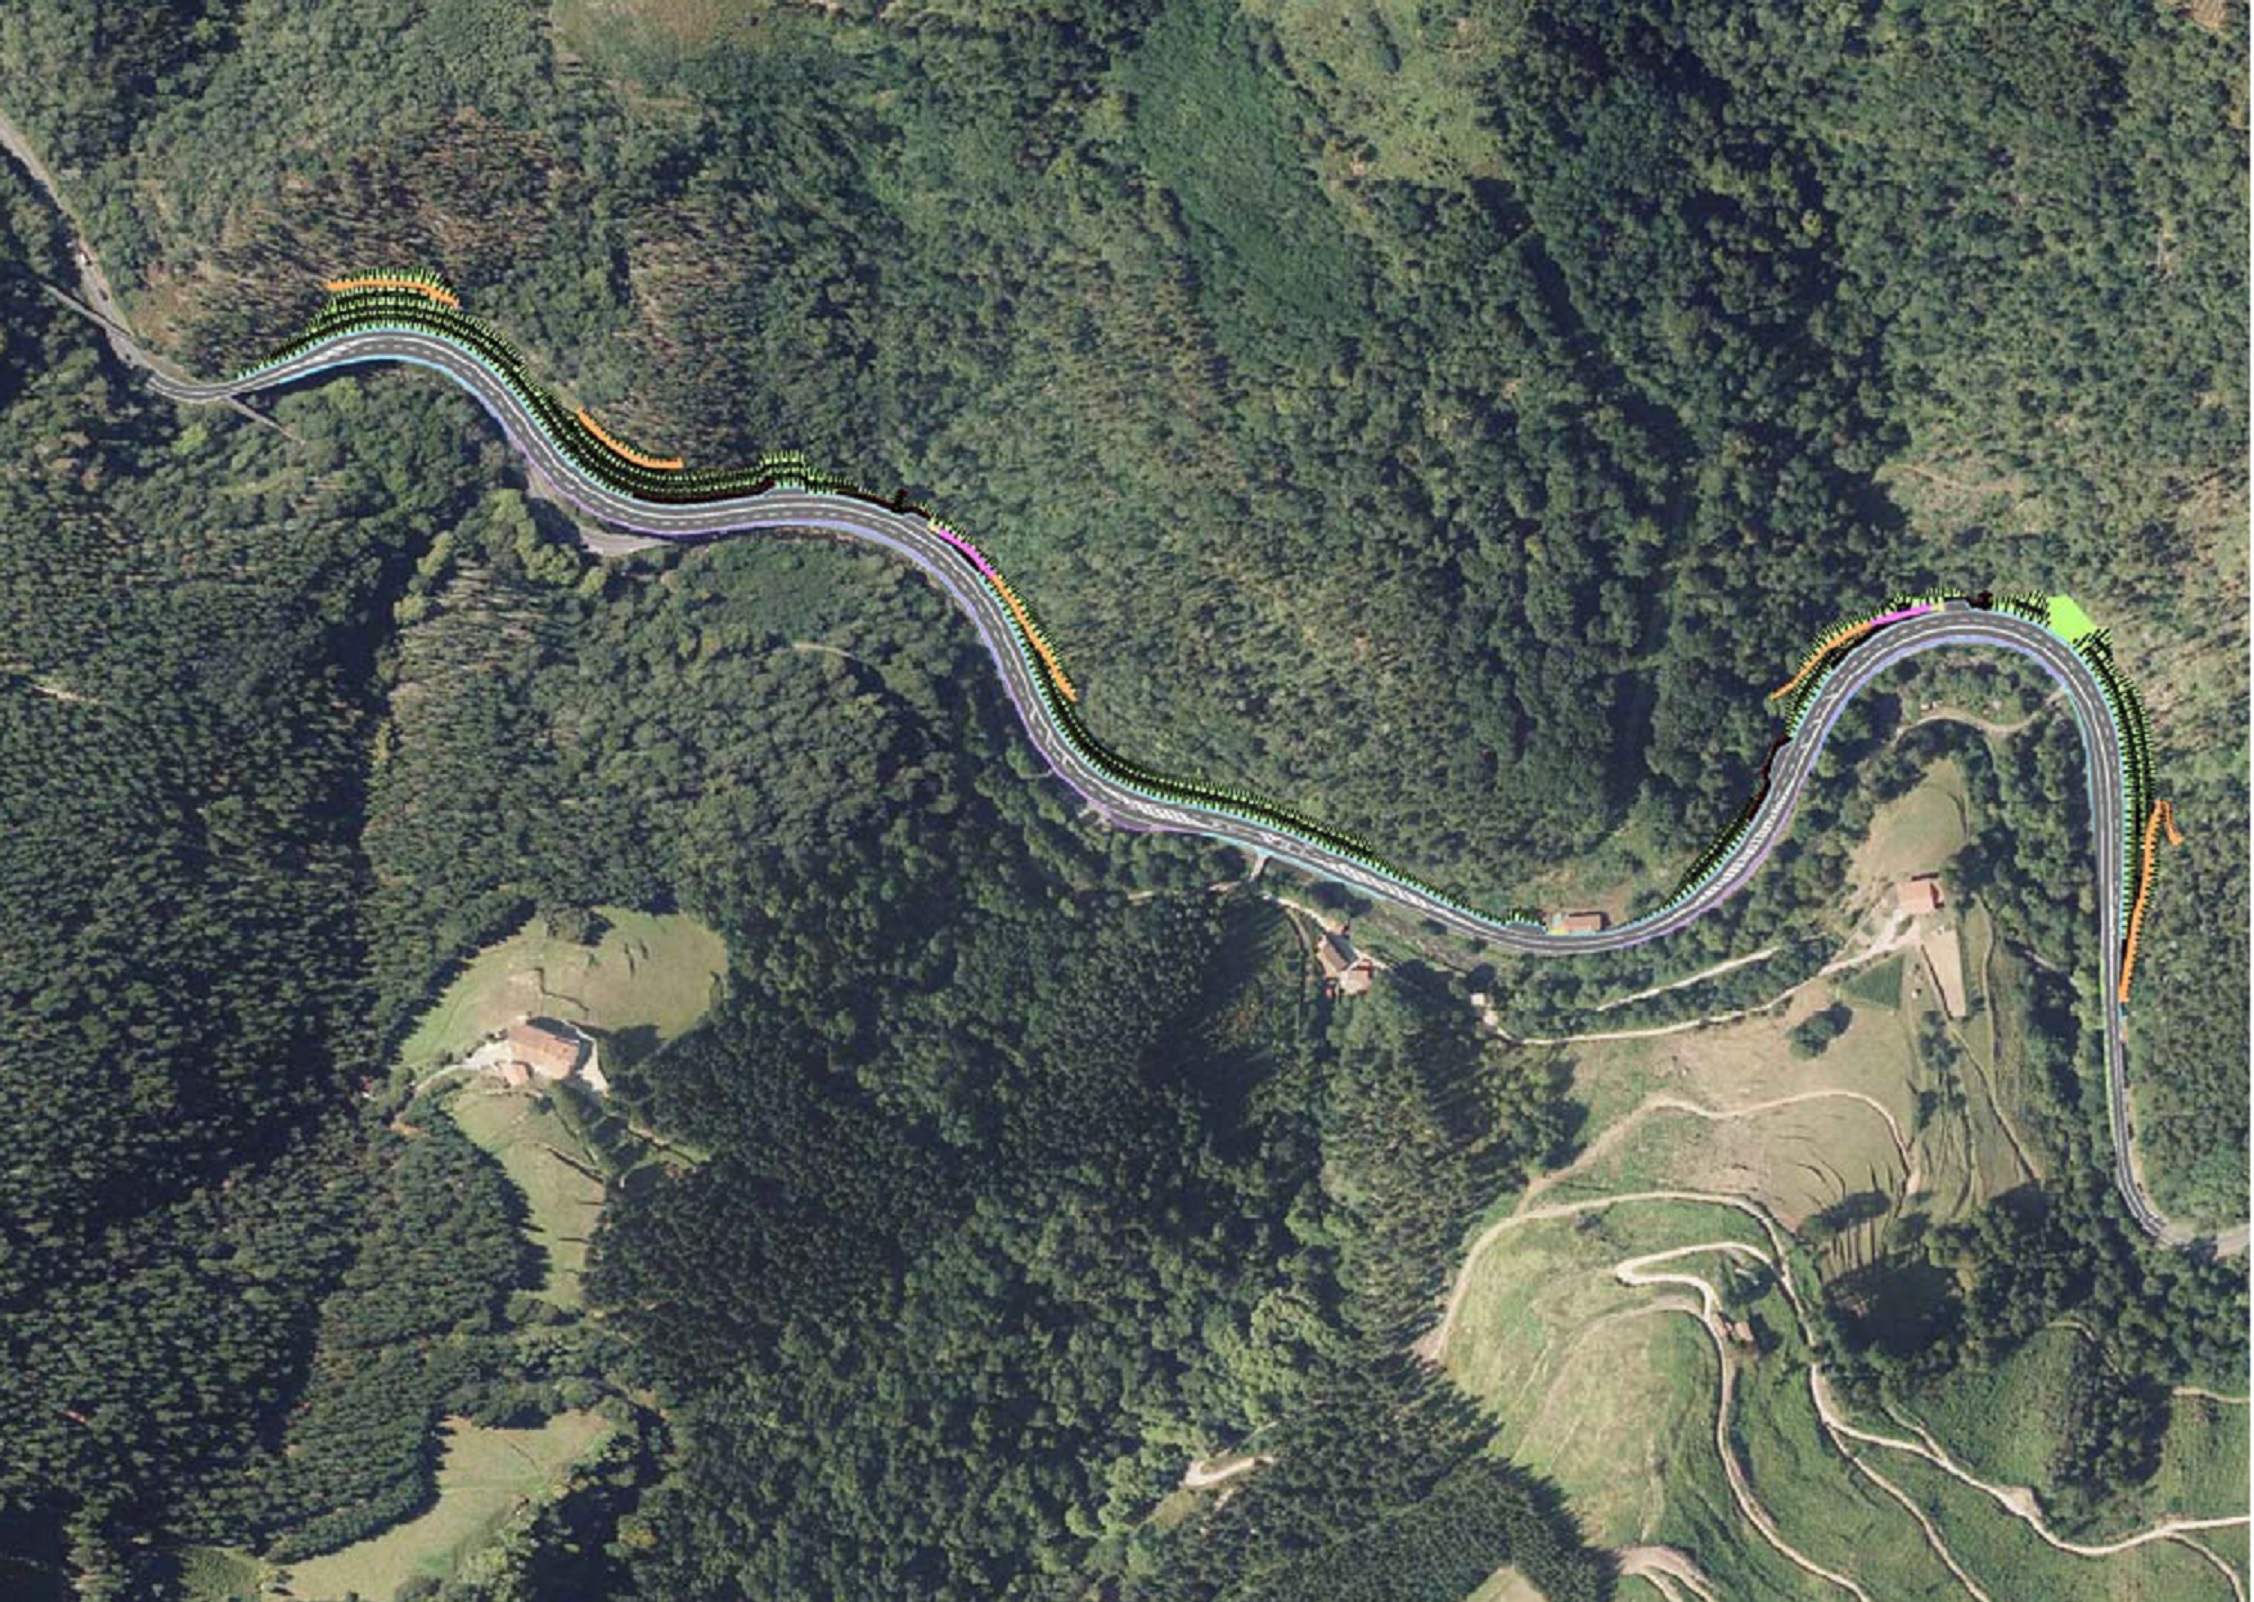 GI-631 errepidea 22,95 eta 24,40 kilometro puntuen arteko aurrerapen tartean –Azkoitia eta Urretxu artean– hobetzeko proiektuaren Ingurumen-Inpaktuaren Txostena argitaratu da